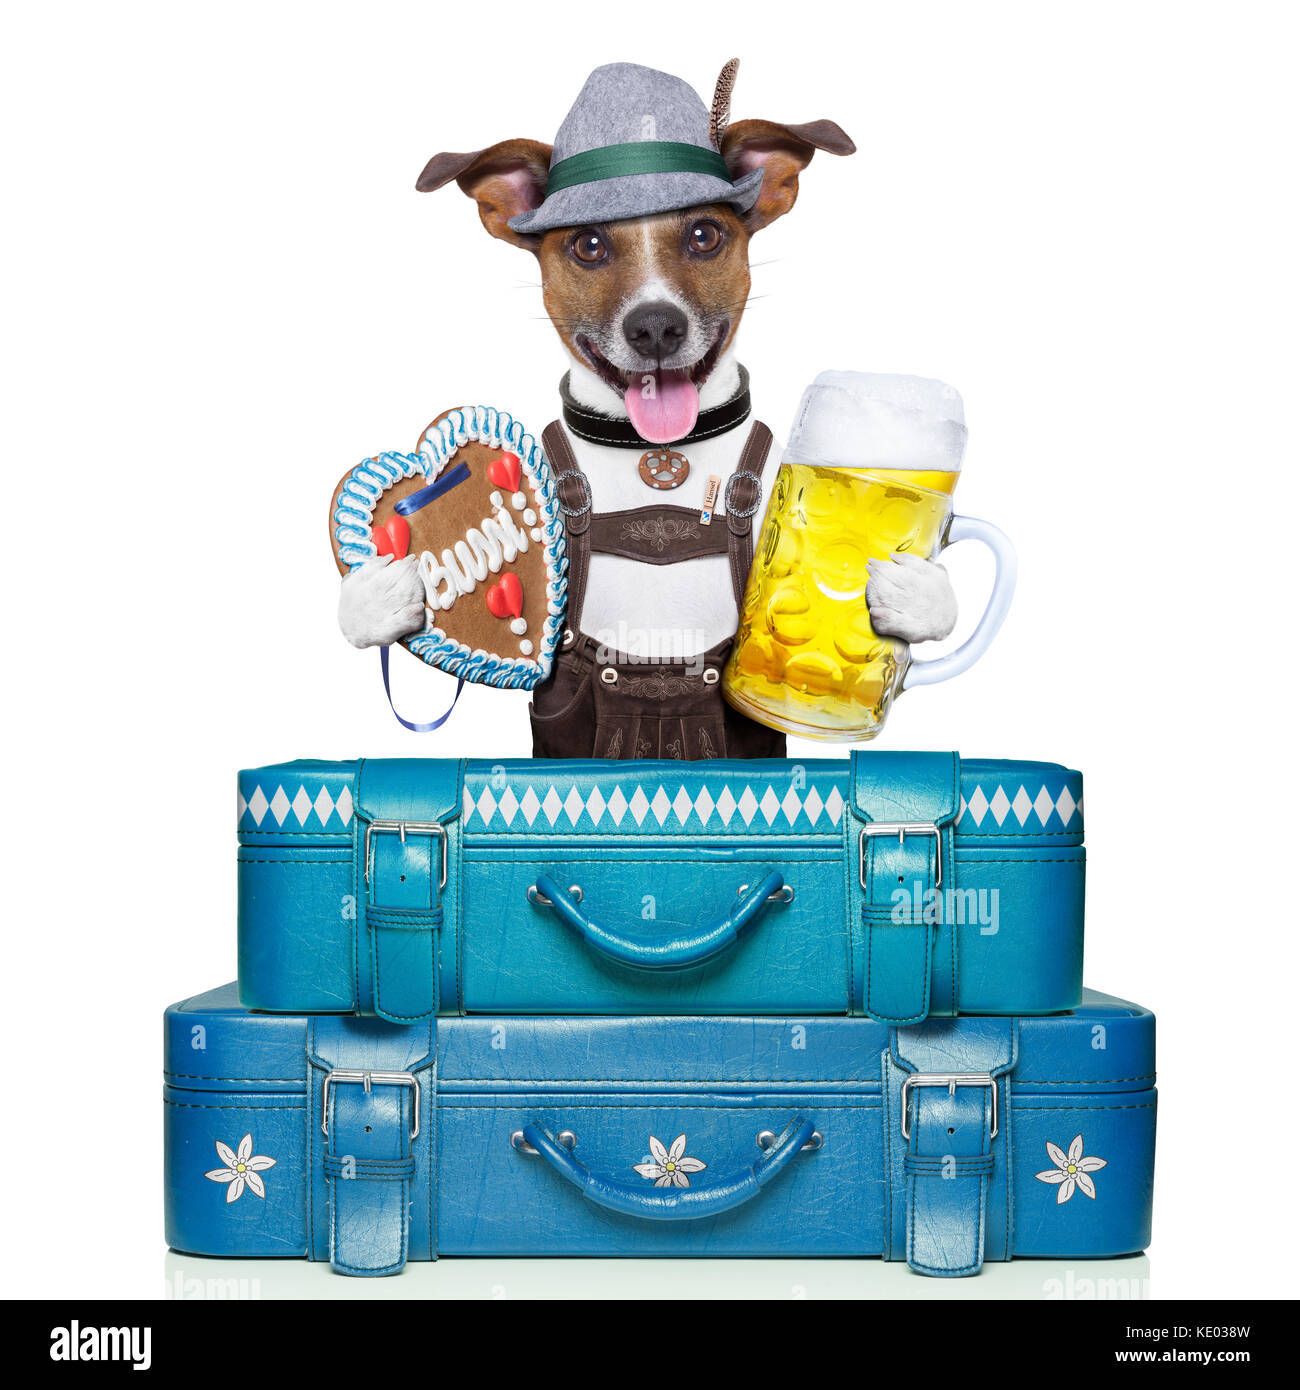 Oktoberfest Hund mit Gepäck, Bier, und Lebkuchen Herzen Stockfotografie -  Alamy